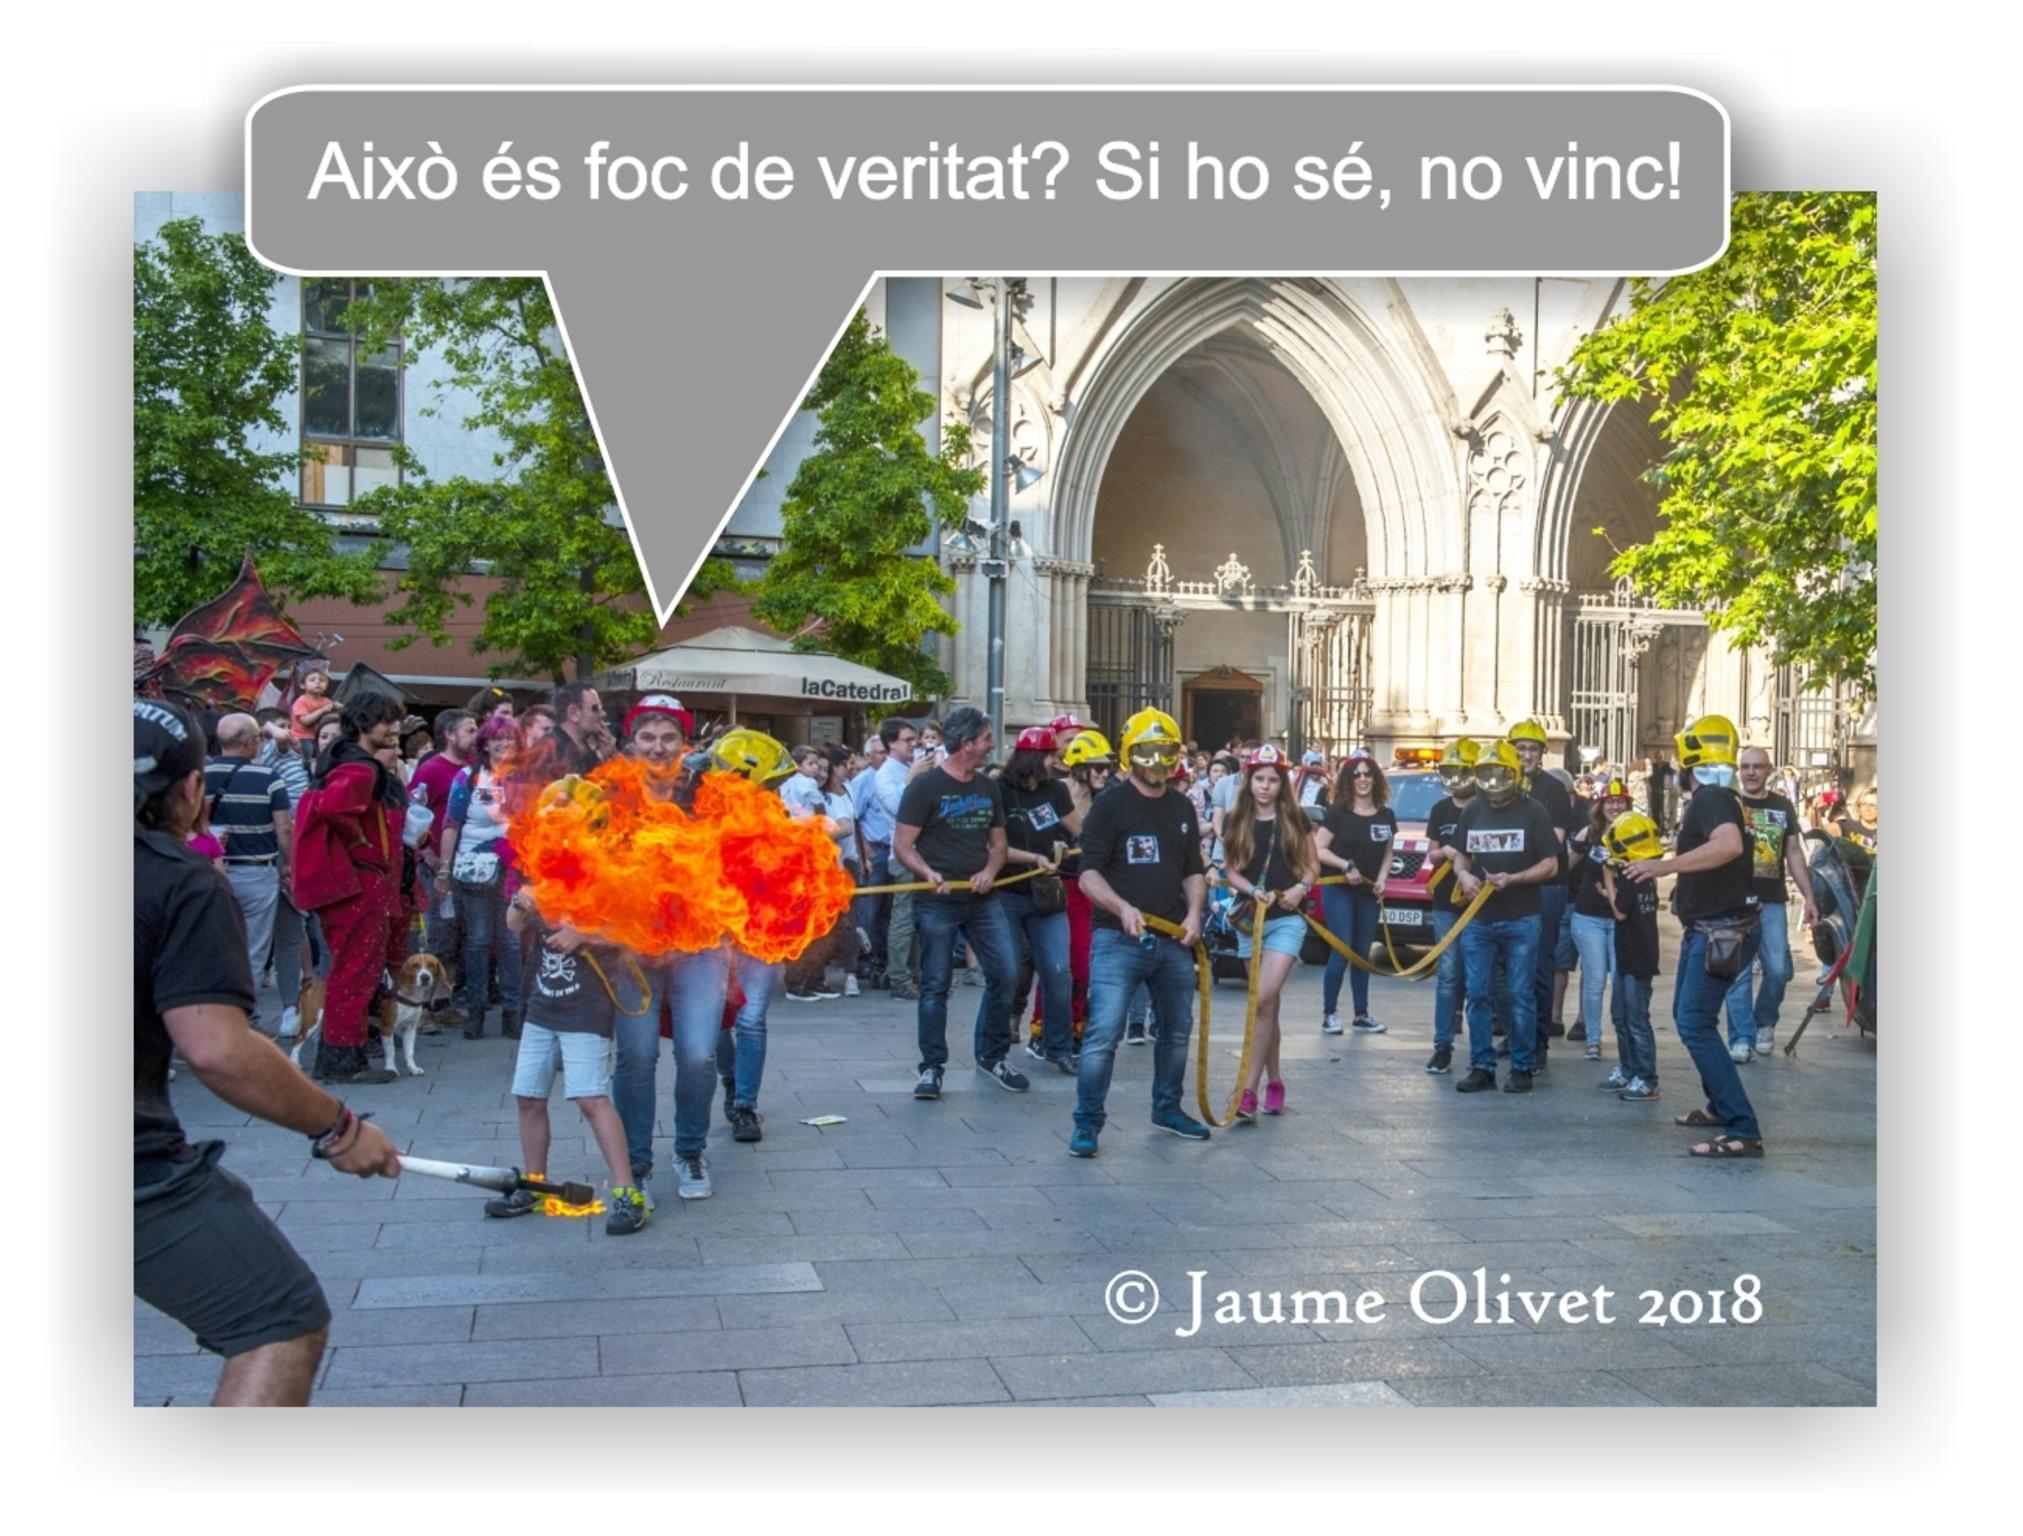 © Jaume Olivet 2018